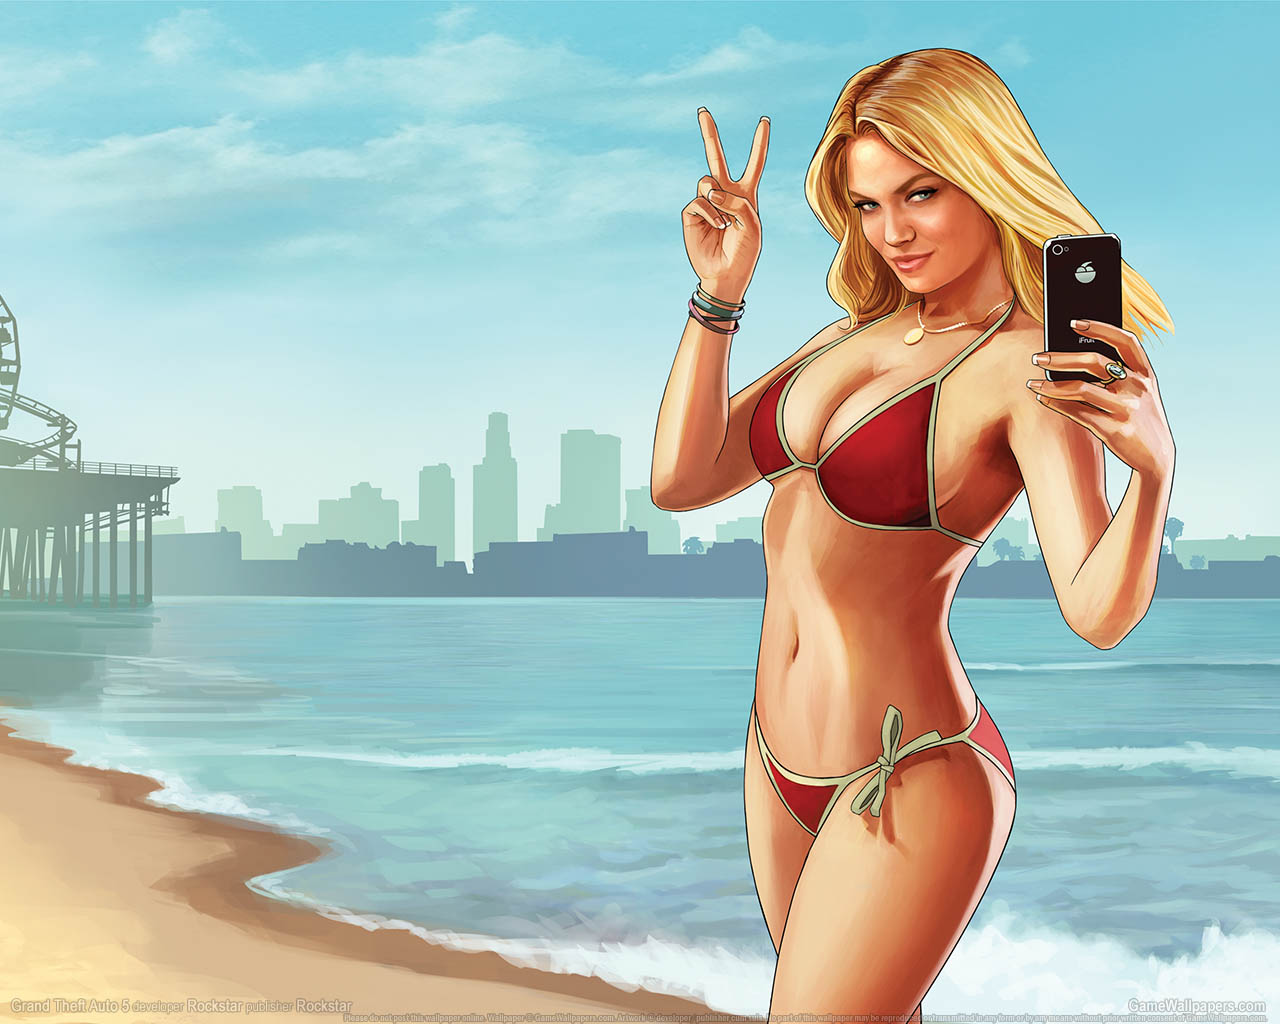 Grand Theft Auto 5 fond d'cran 01 1280x1024